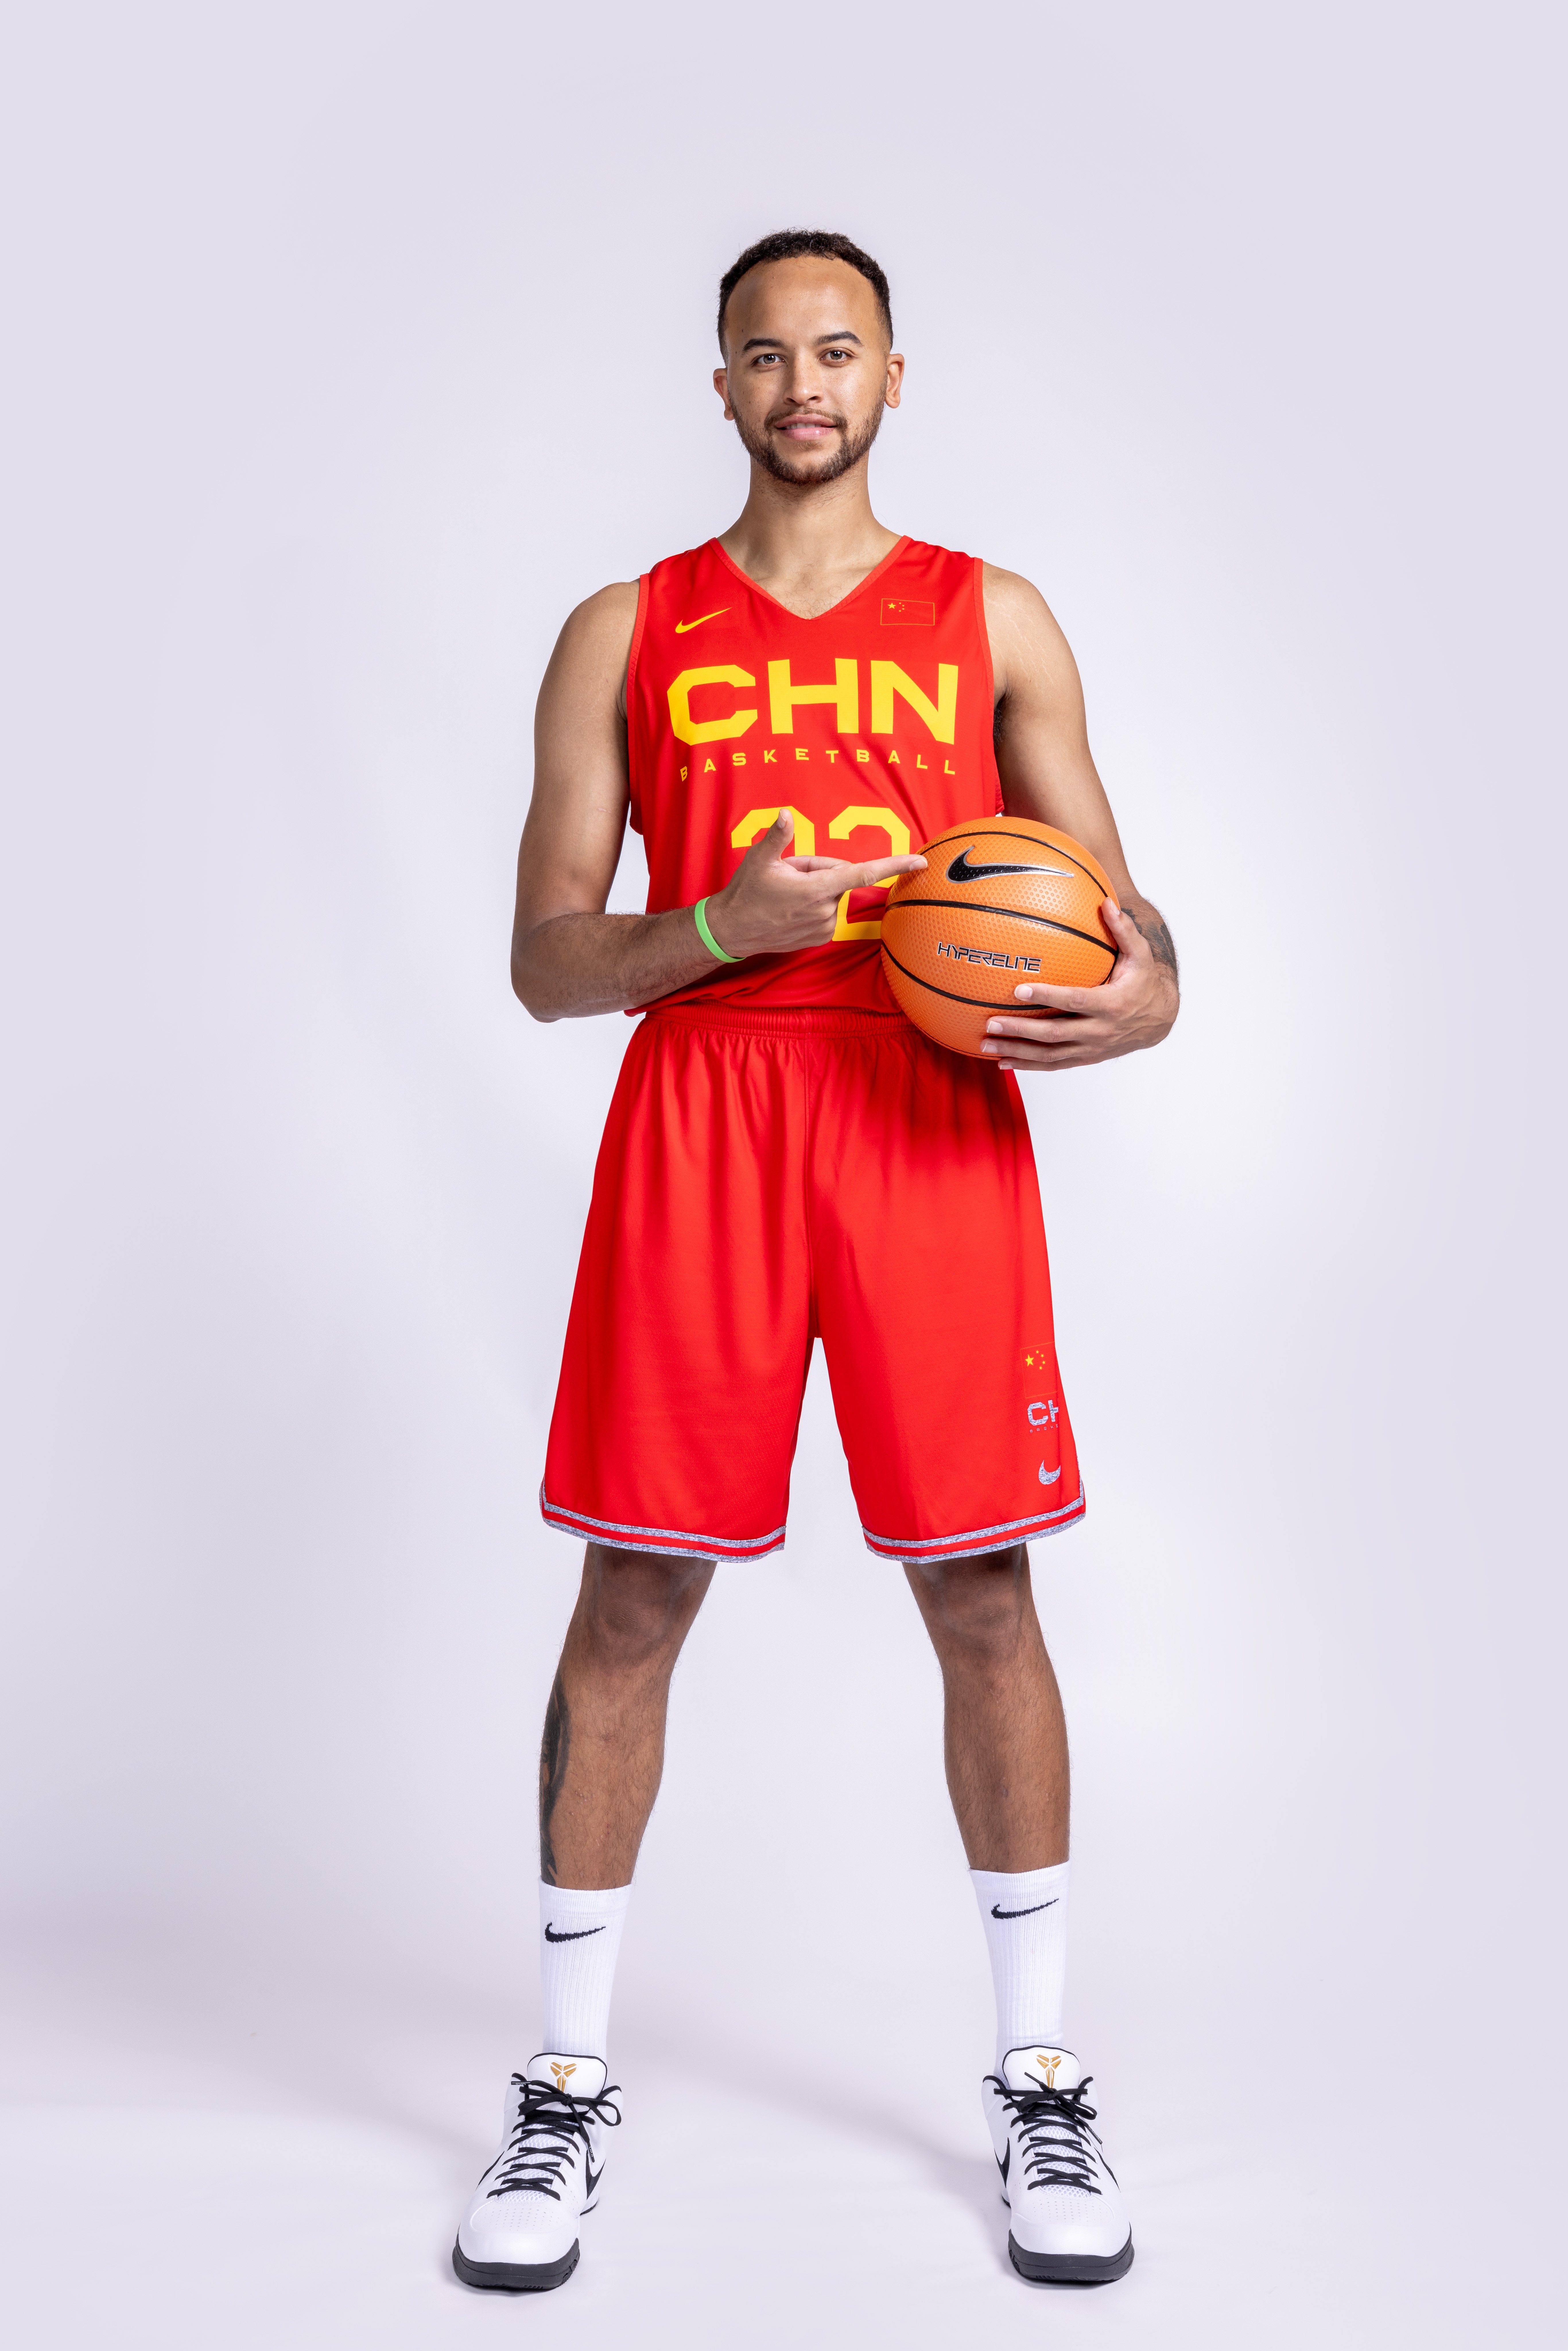 包括李凯尔在内的17名中国男篮集训球员将全部前往意大利